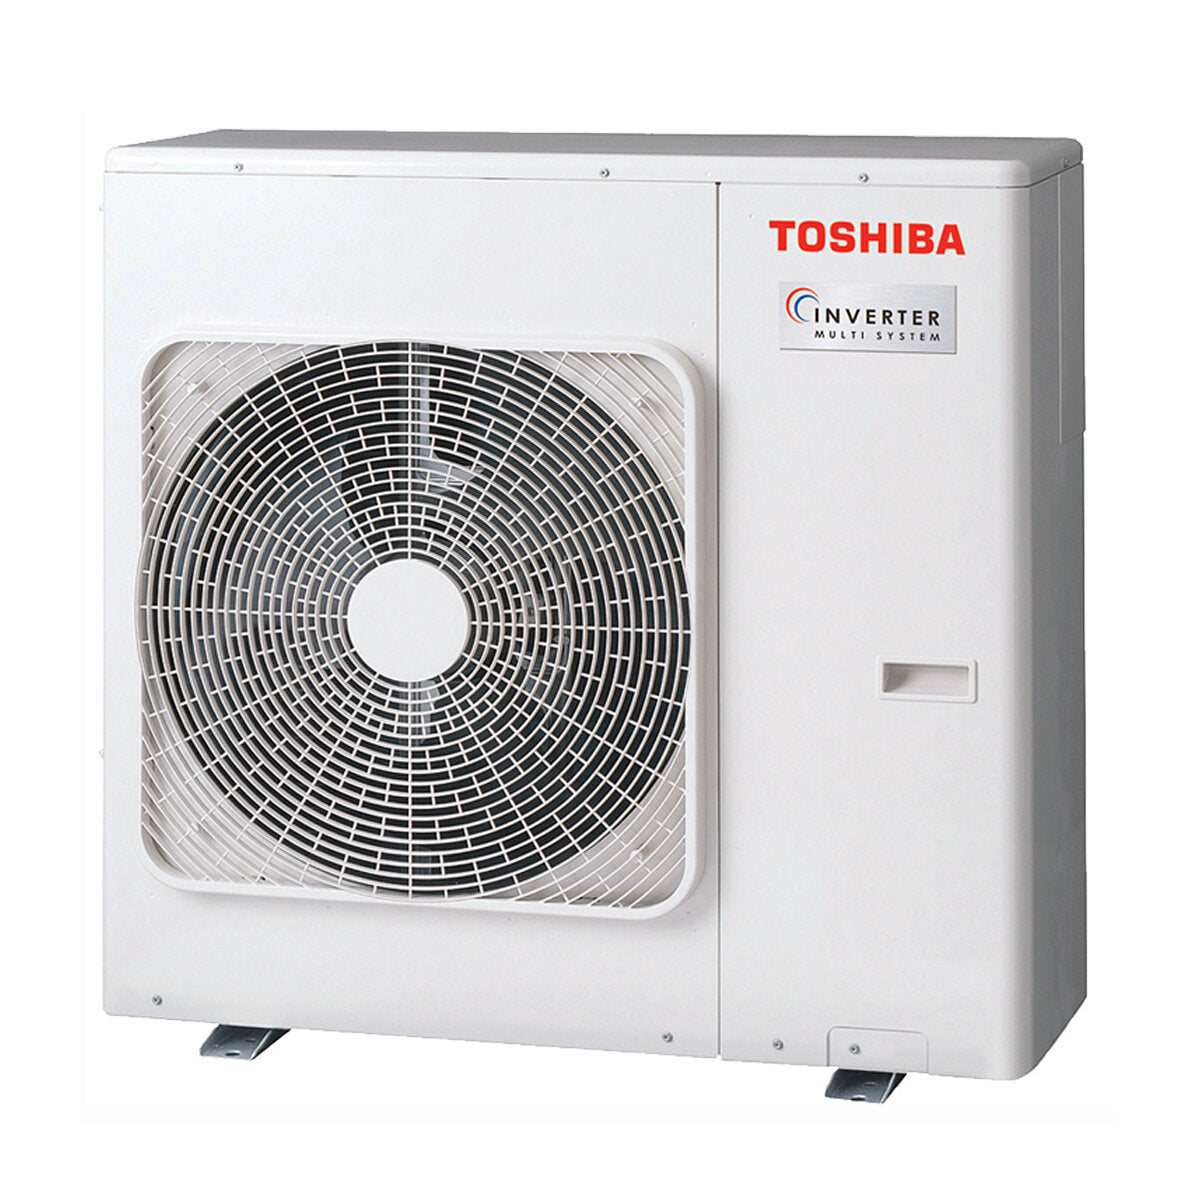 Toshiba Ductable Air Conditioner U2 penta split 9000 + 9000 + 9000 + 9000 + 16000 BTU inverter A++ unité extérieure 10,0 kW